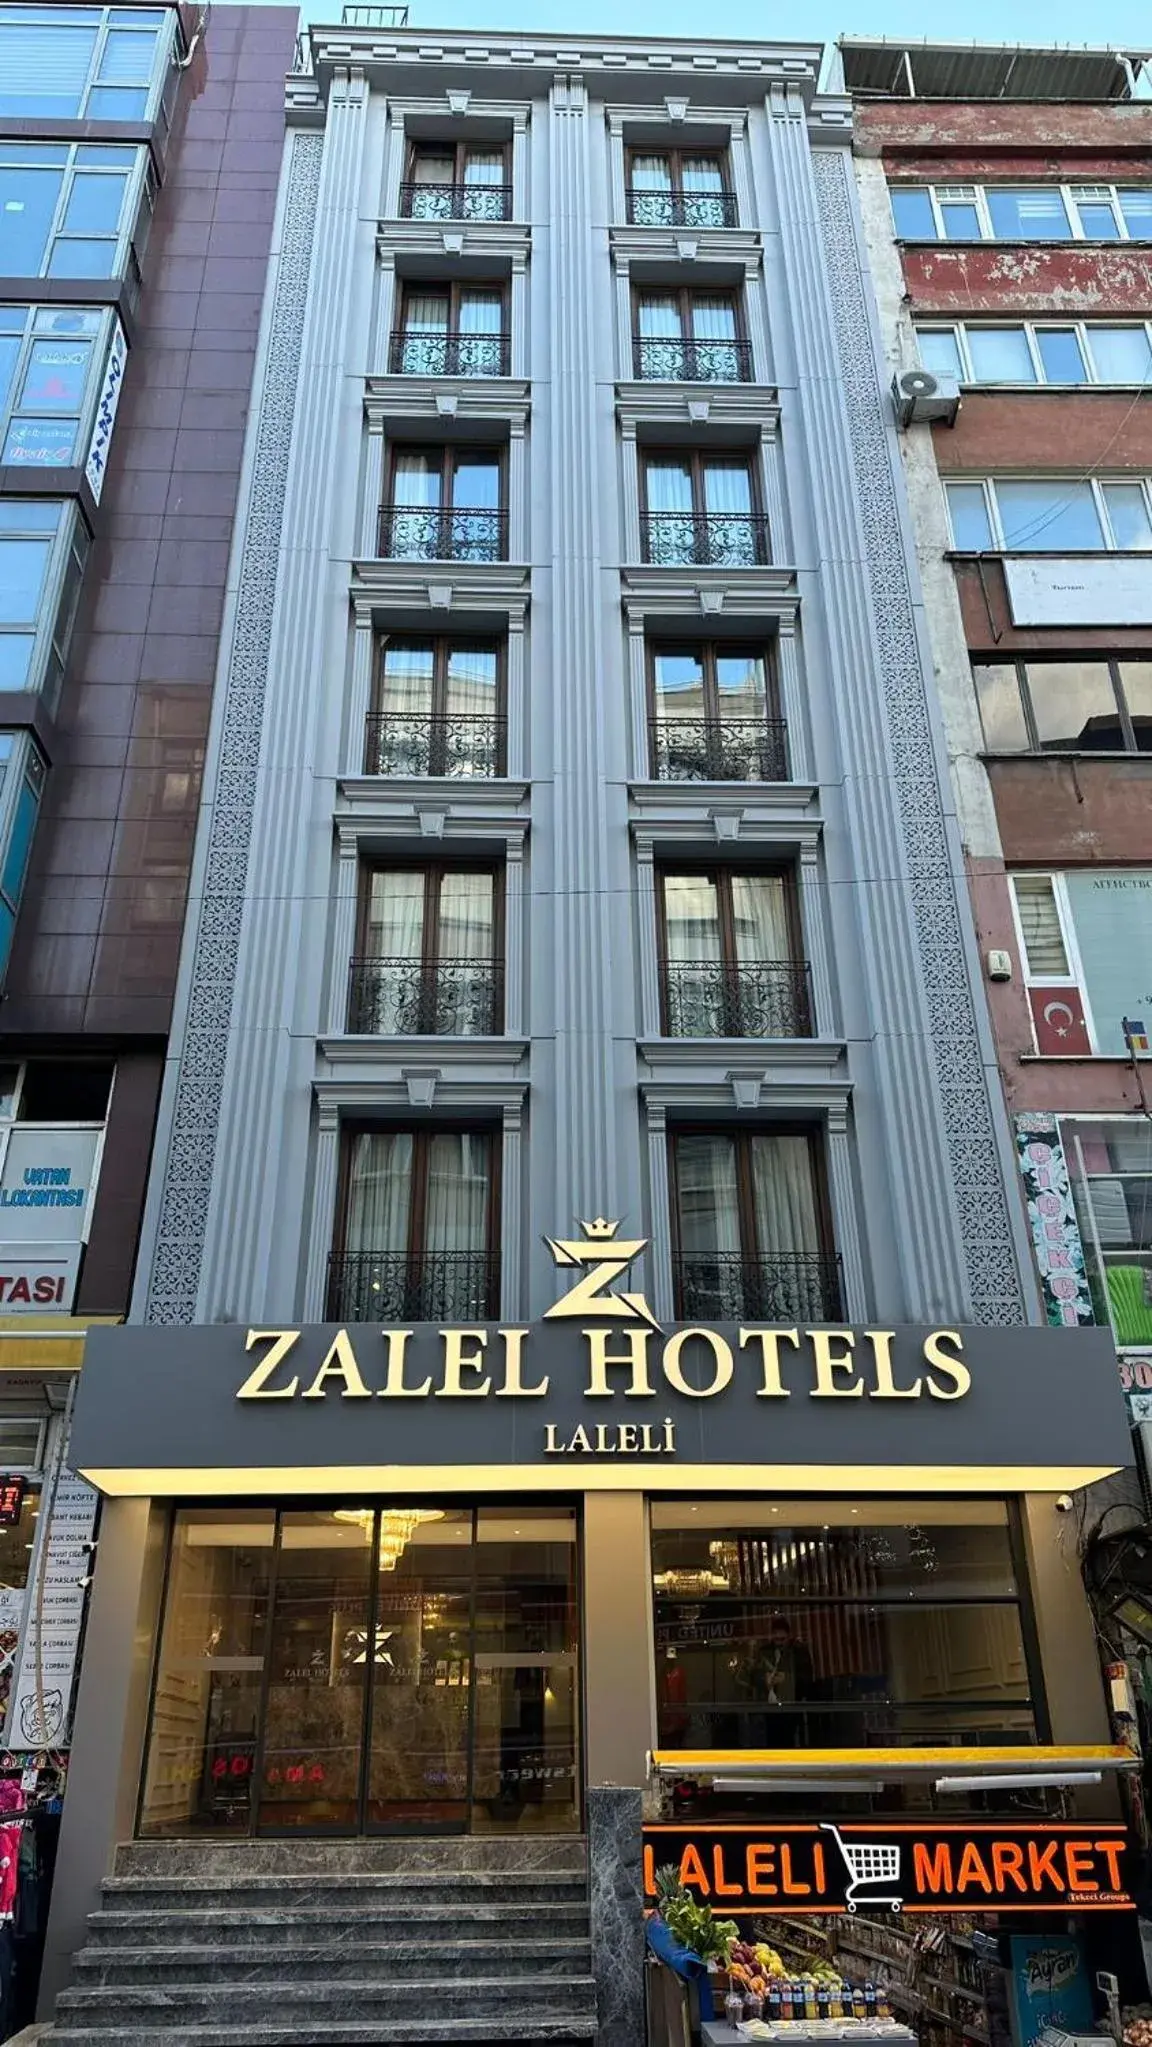 Property Building in zalel hotels laleli